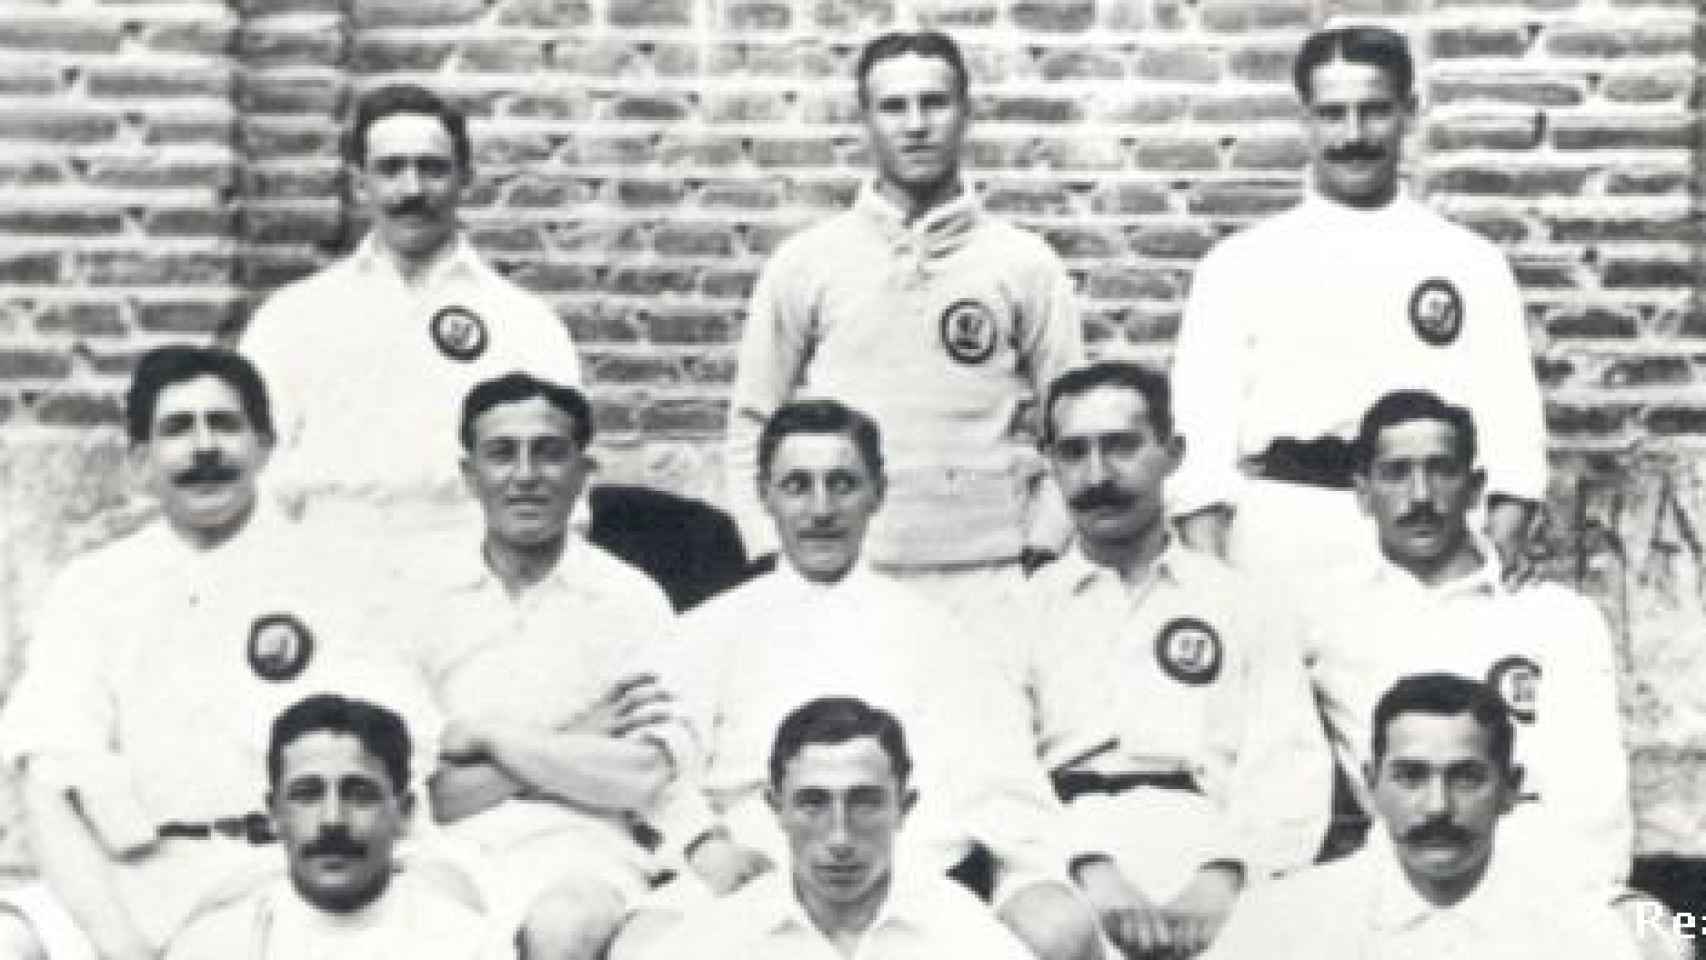 Foto de equipo del Real Madrid de principios del siglo XX.